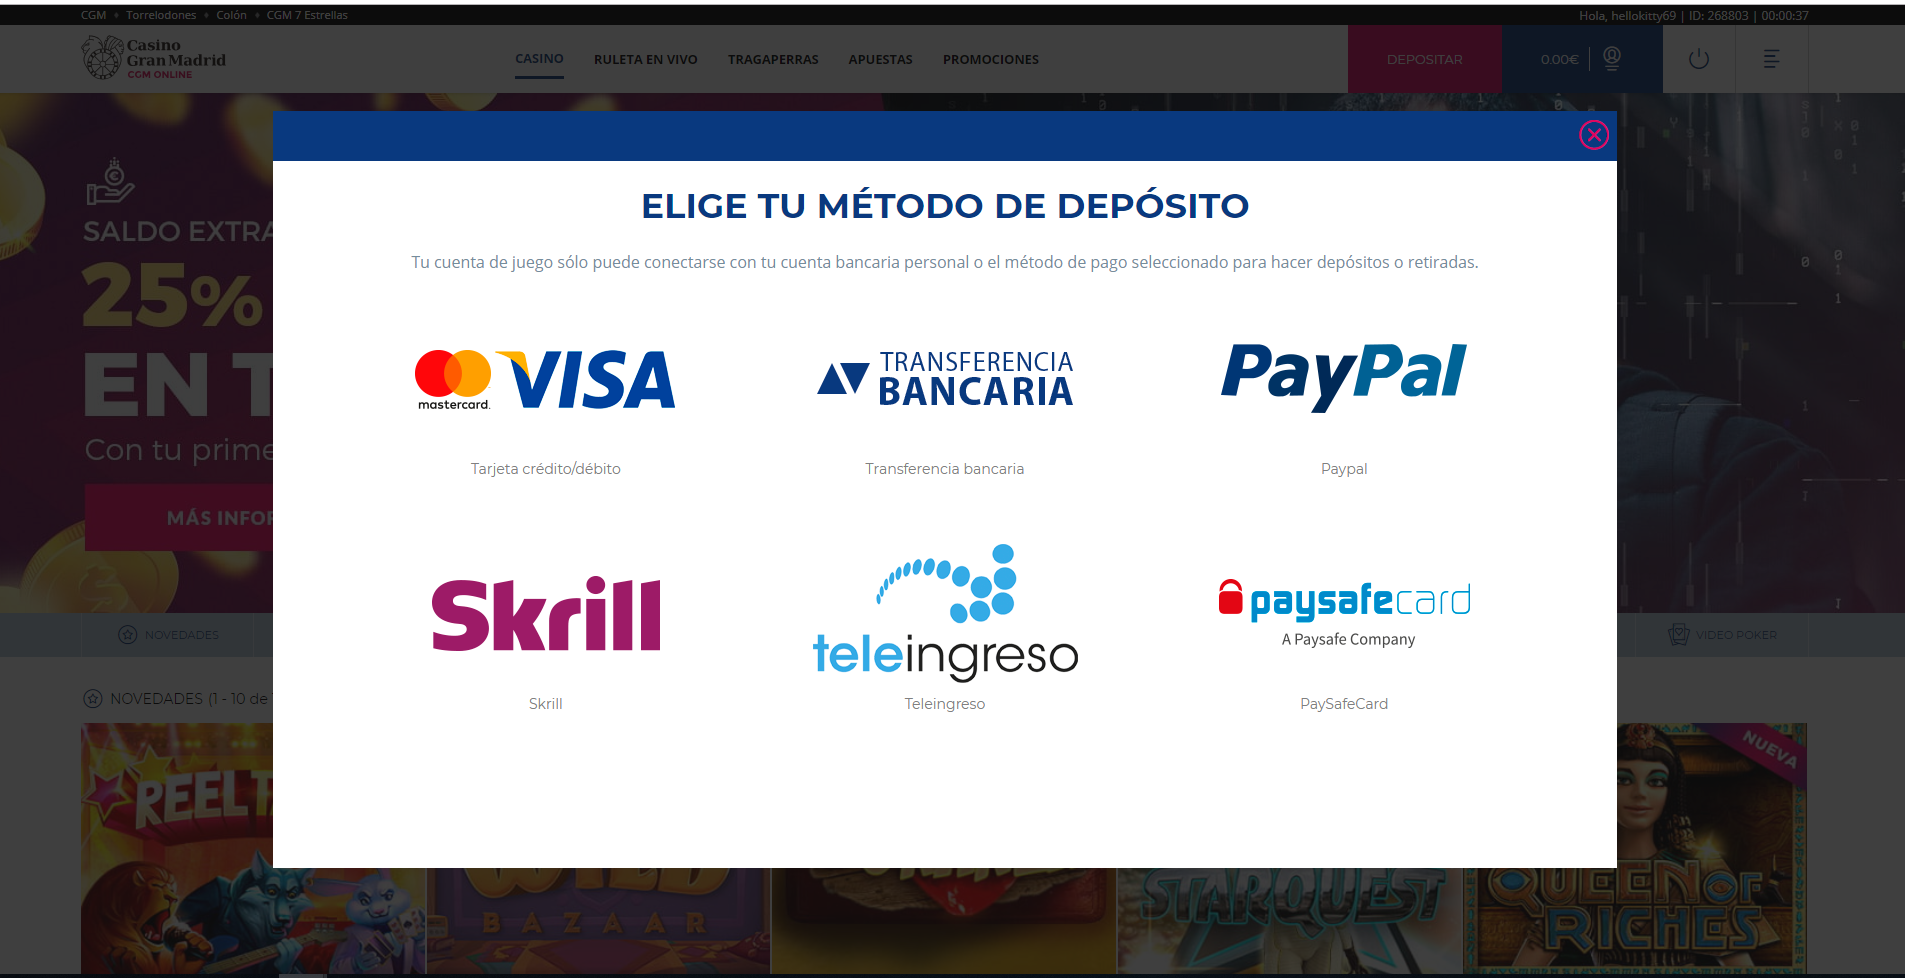 Imagen en la que se muestra los diferentes métodos de pago que se permiten en el Casino Gran Madrid